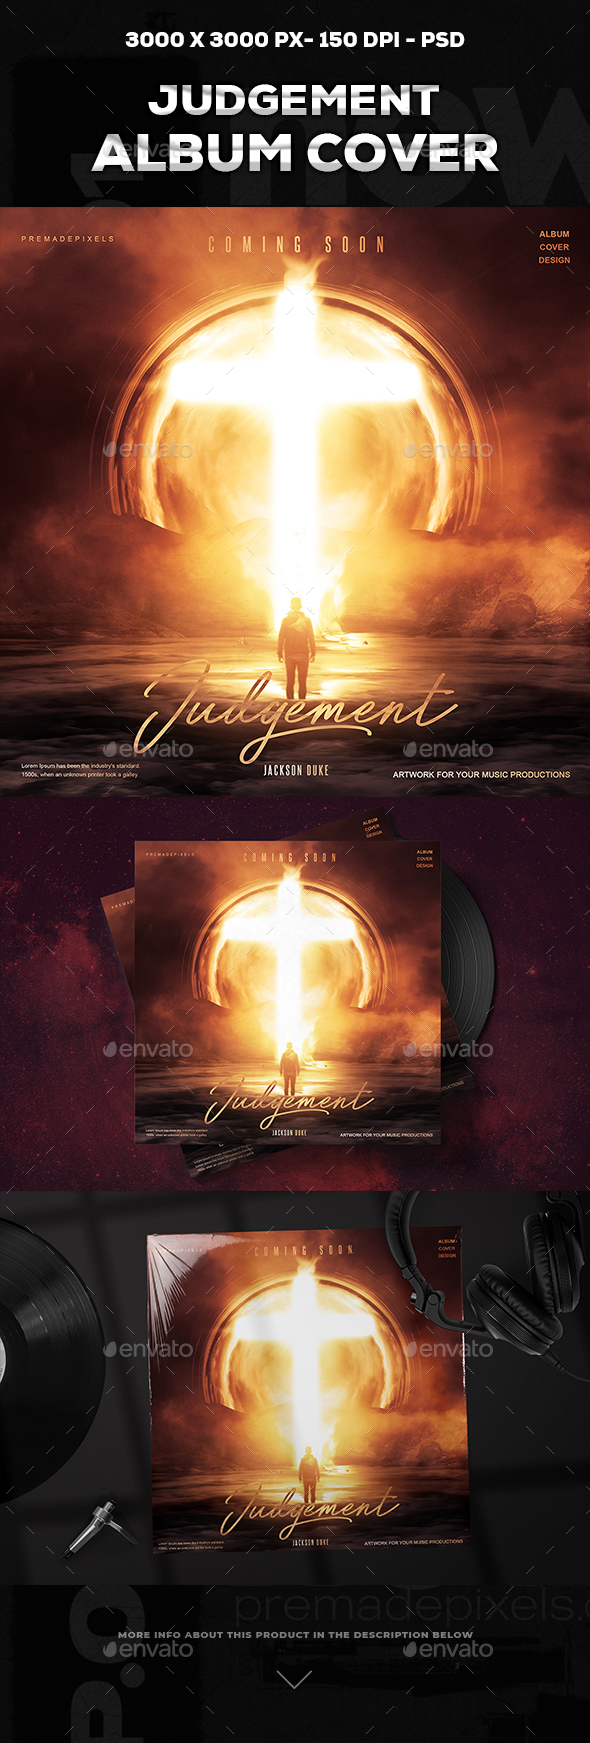 Judgement Album Cover